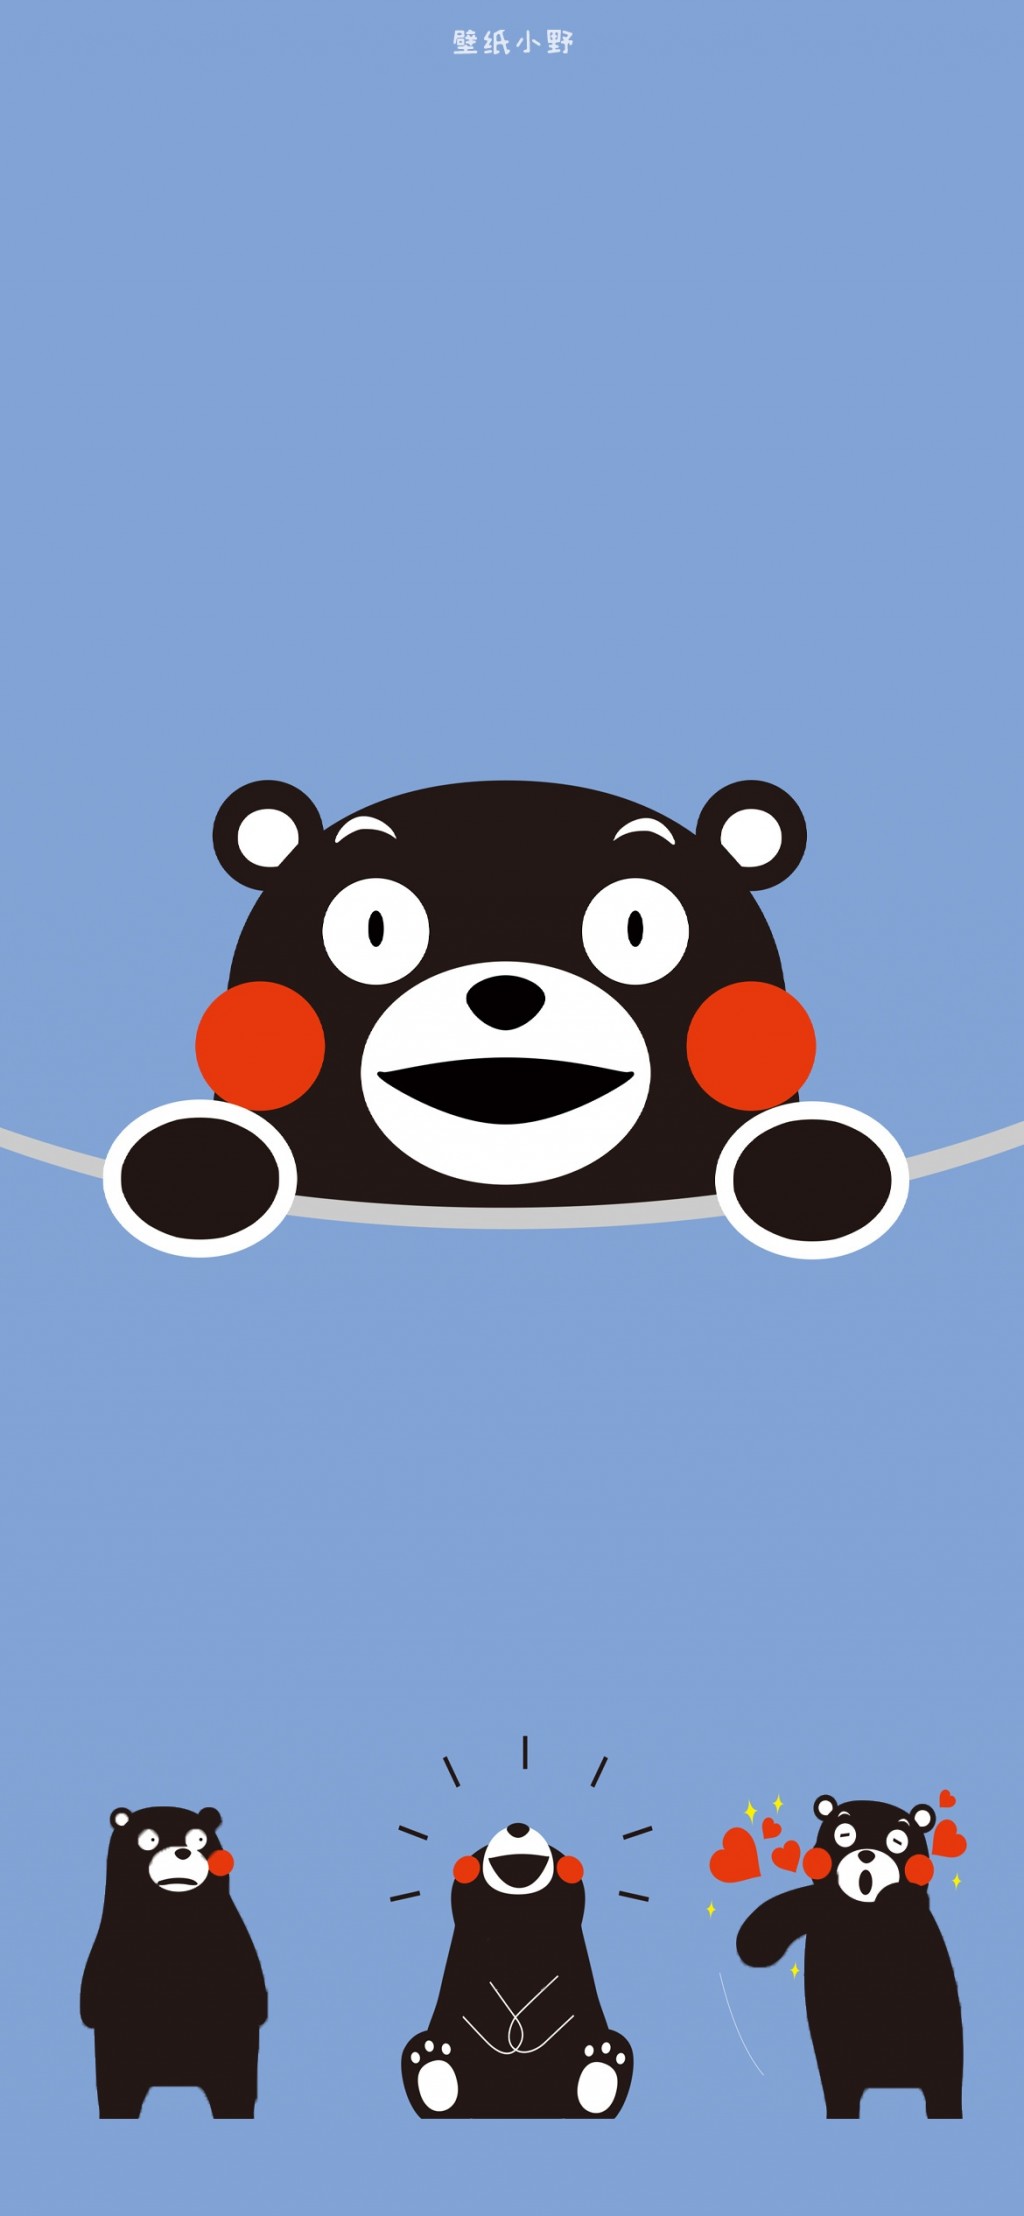 熊本熊可爱表情包锁屏壁纸 手机壁纸 靓丽图库